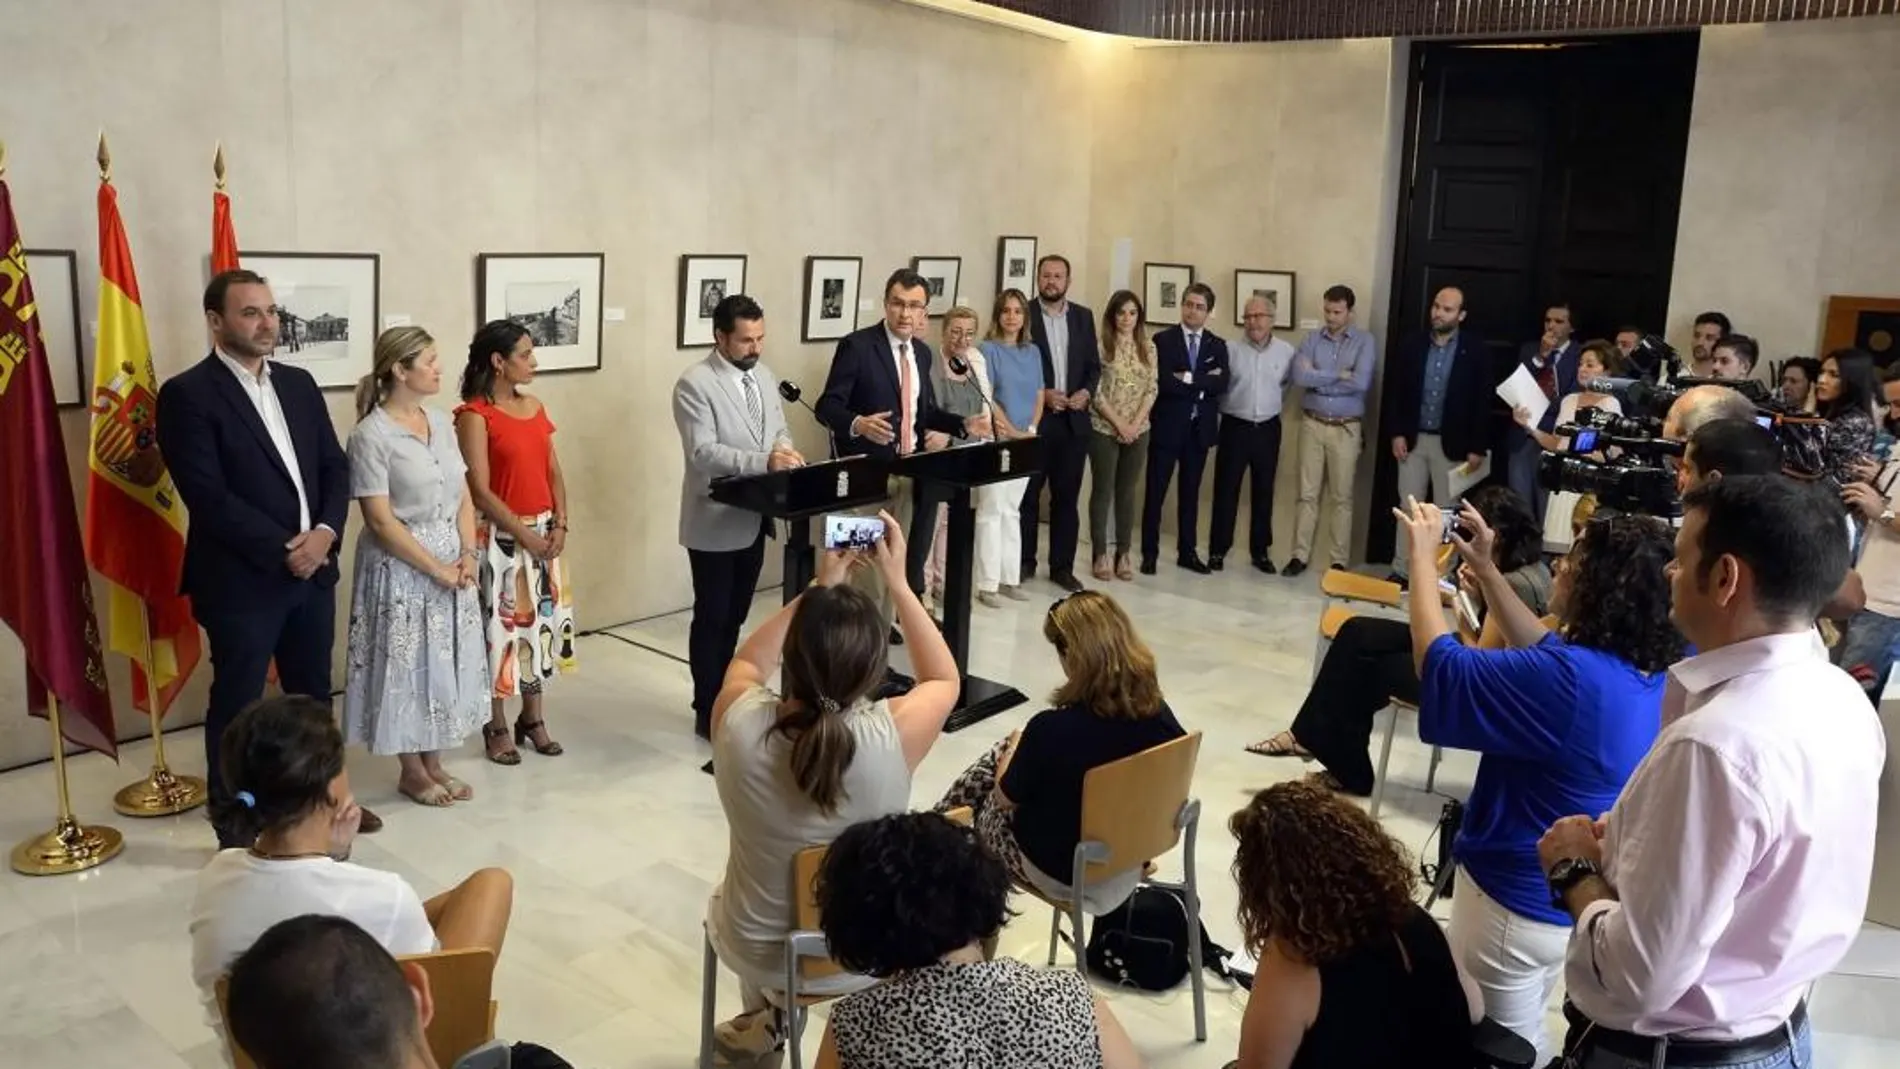 El alcalde de Murcia, José Ballesta, junto al portavoz de Cs, Mario Gómez, anunciaron ayer el acuerdo para aprobar los Presupuestos municipales de 2018